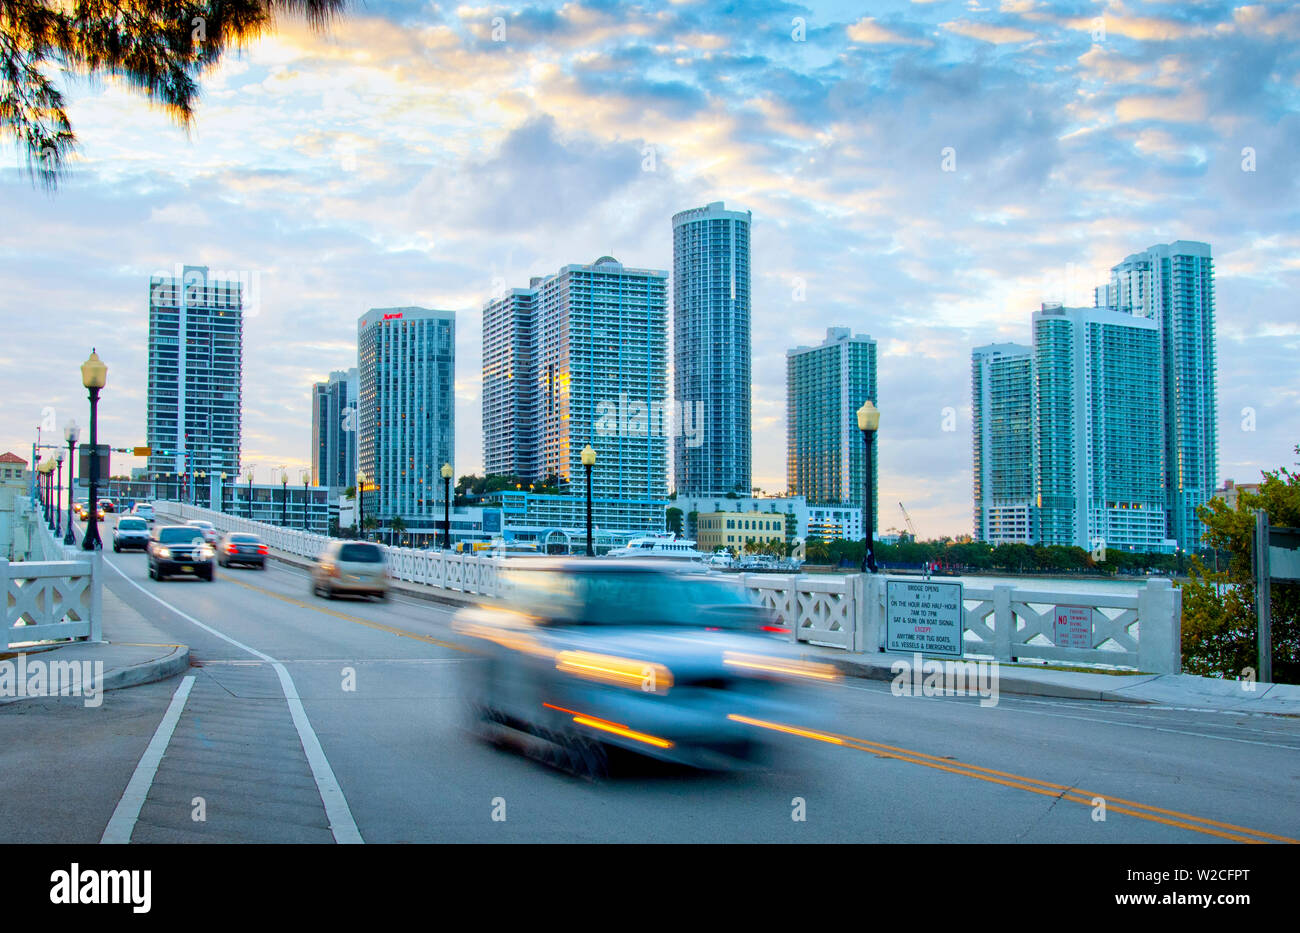 Florida, Miami, Venetian Causeway, Crosses Biscayne Bay Connecting Miami Beach To Downtown Miami Stock Photo